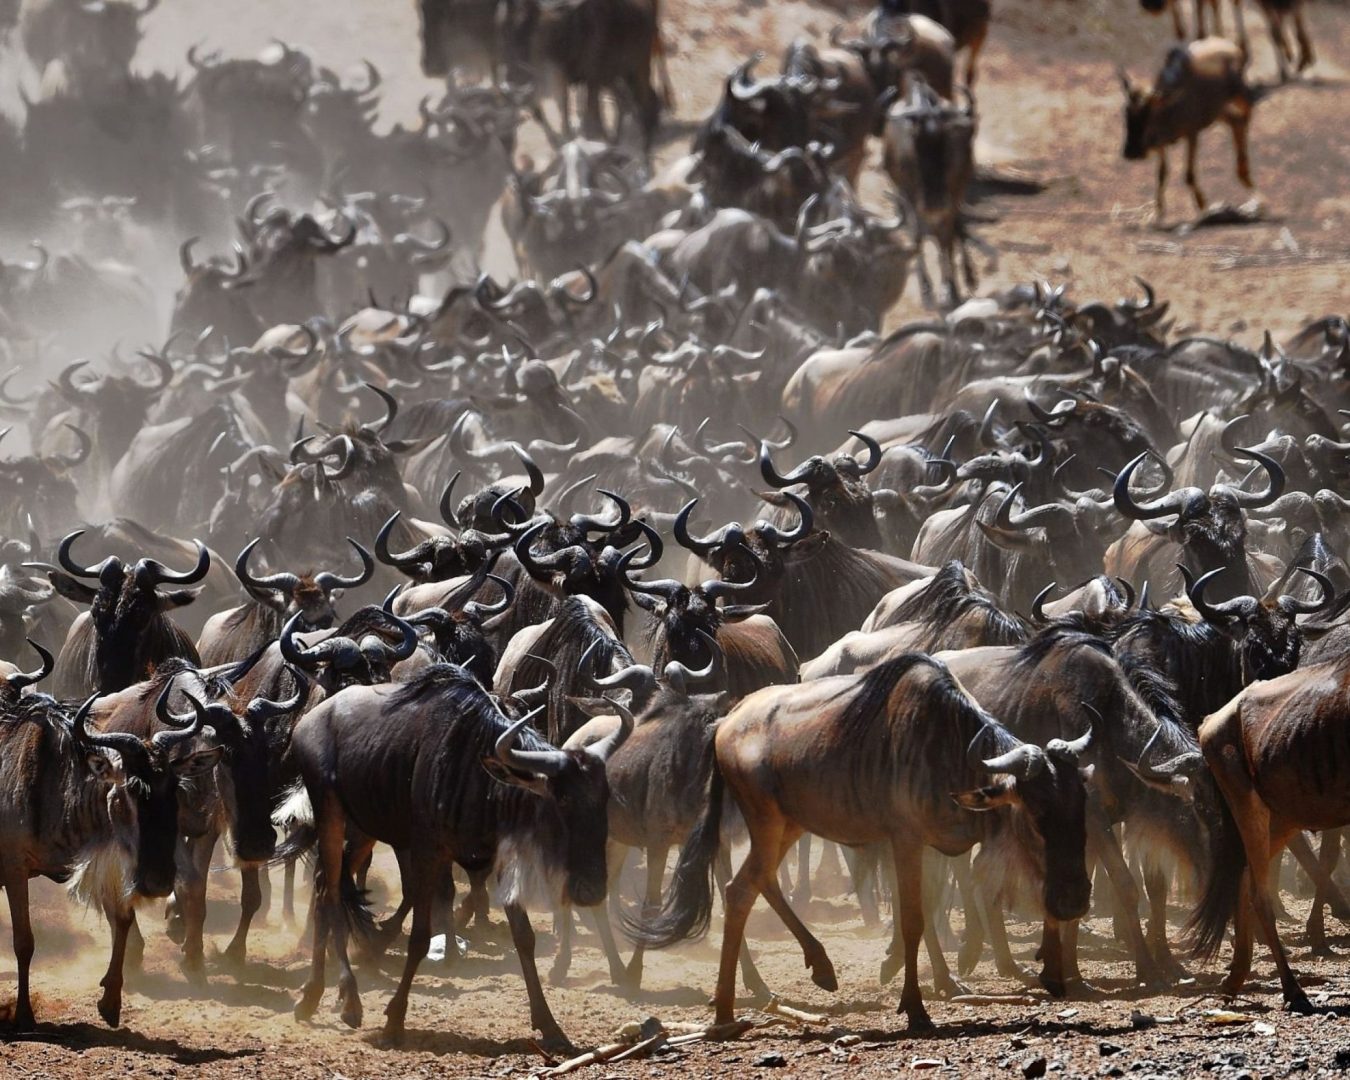 Maasai-mara-wild-beast-migration